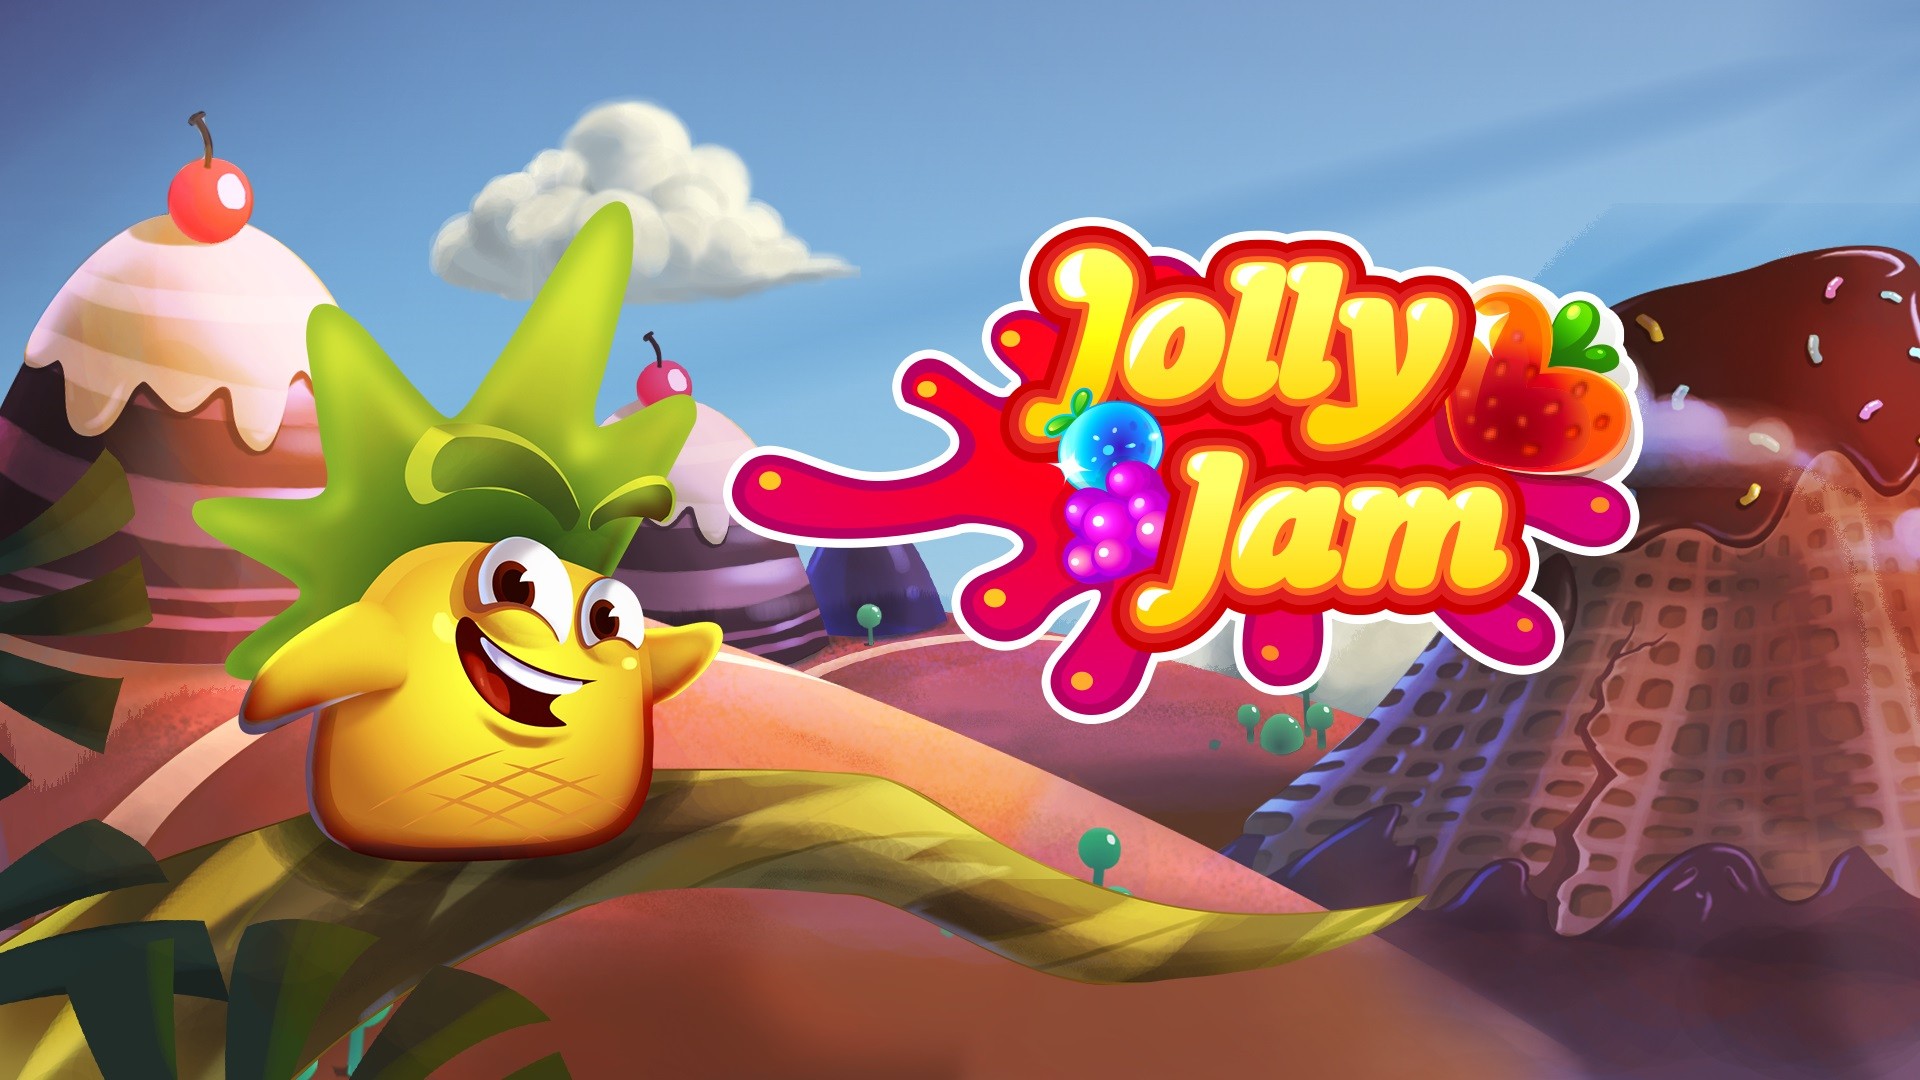 Jolly Jam promete diversión y retos en sus 200 niveles de dificultad. Imagen: Rovio